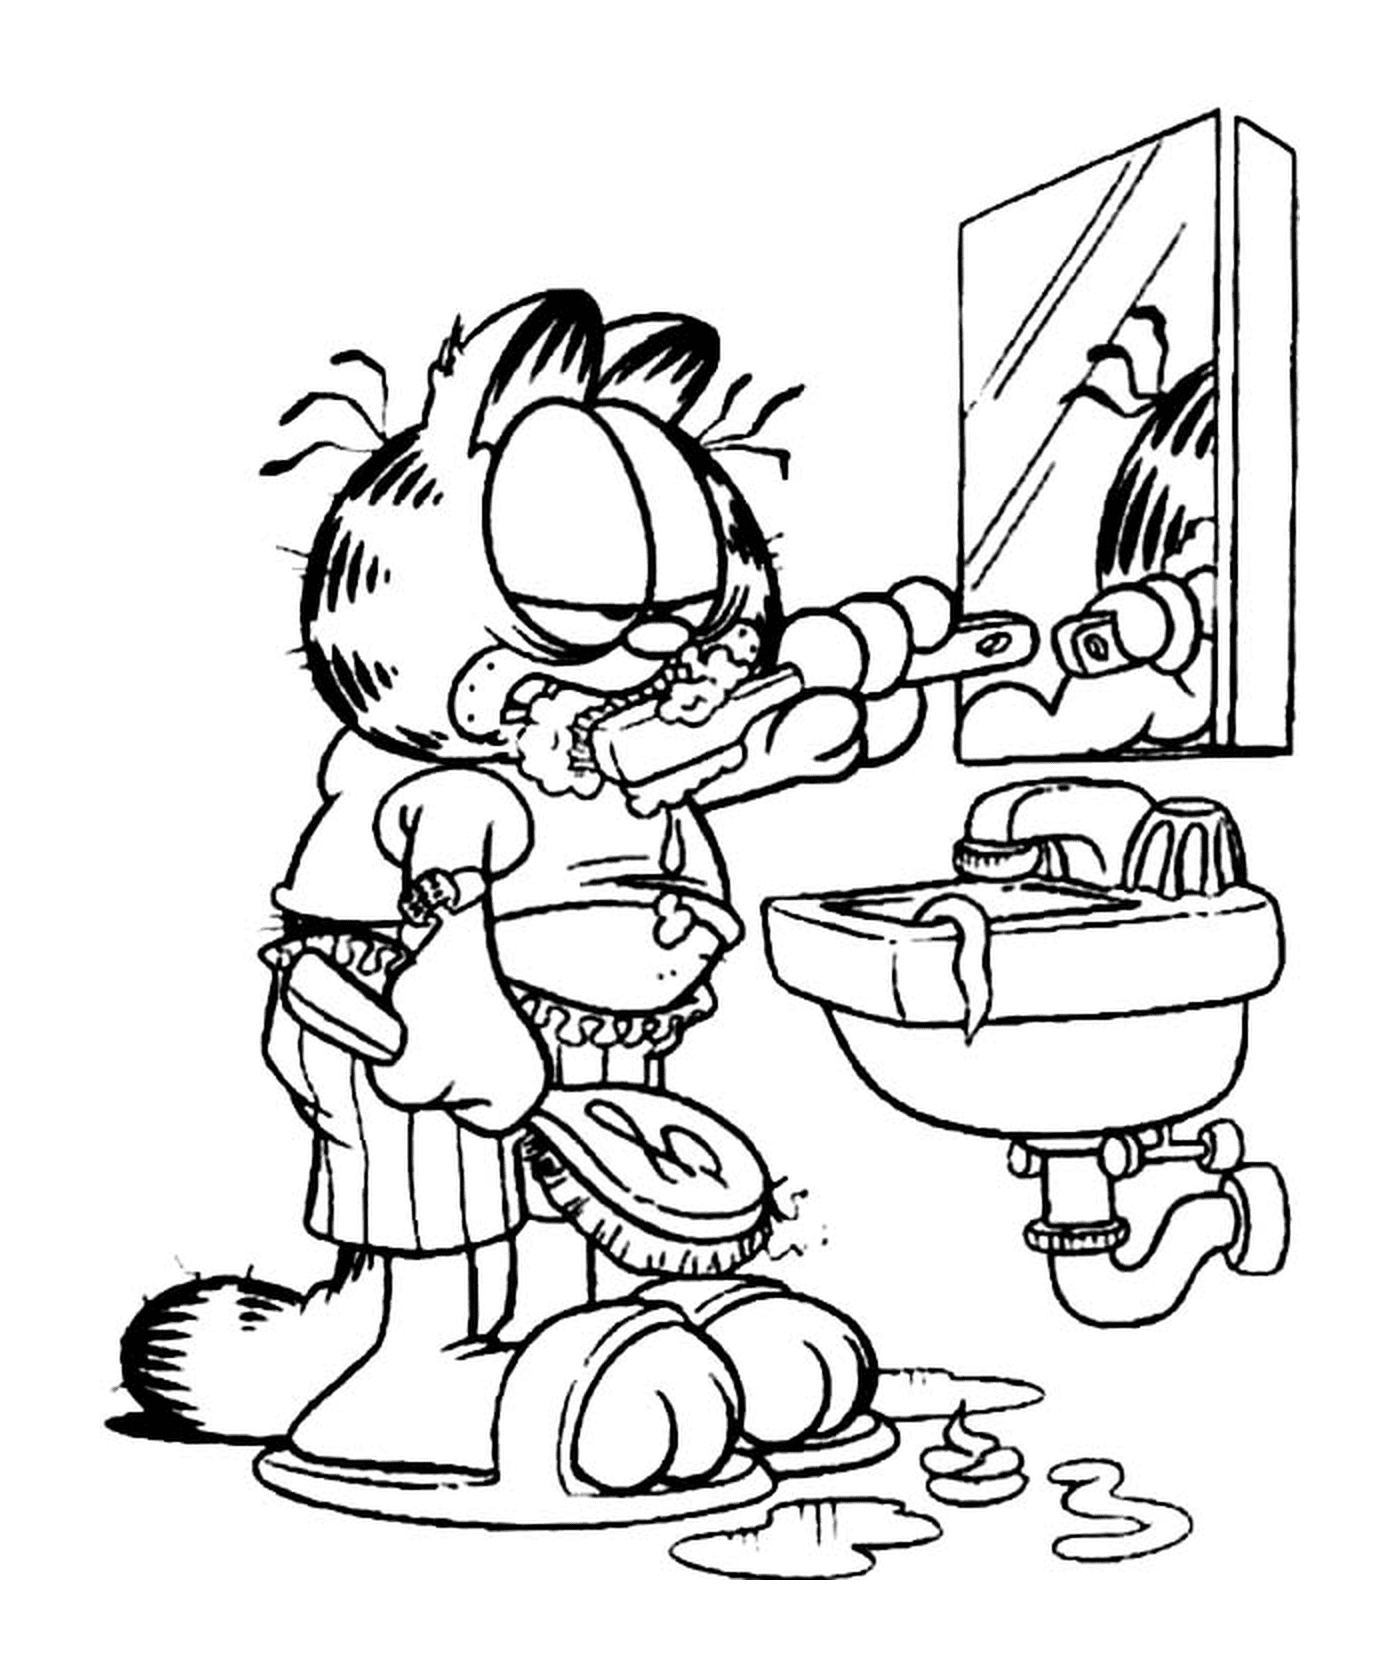  Garfield putzt seine Zähne 